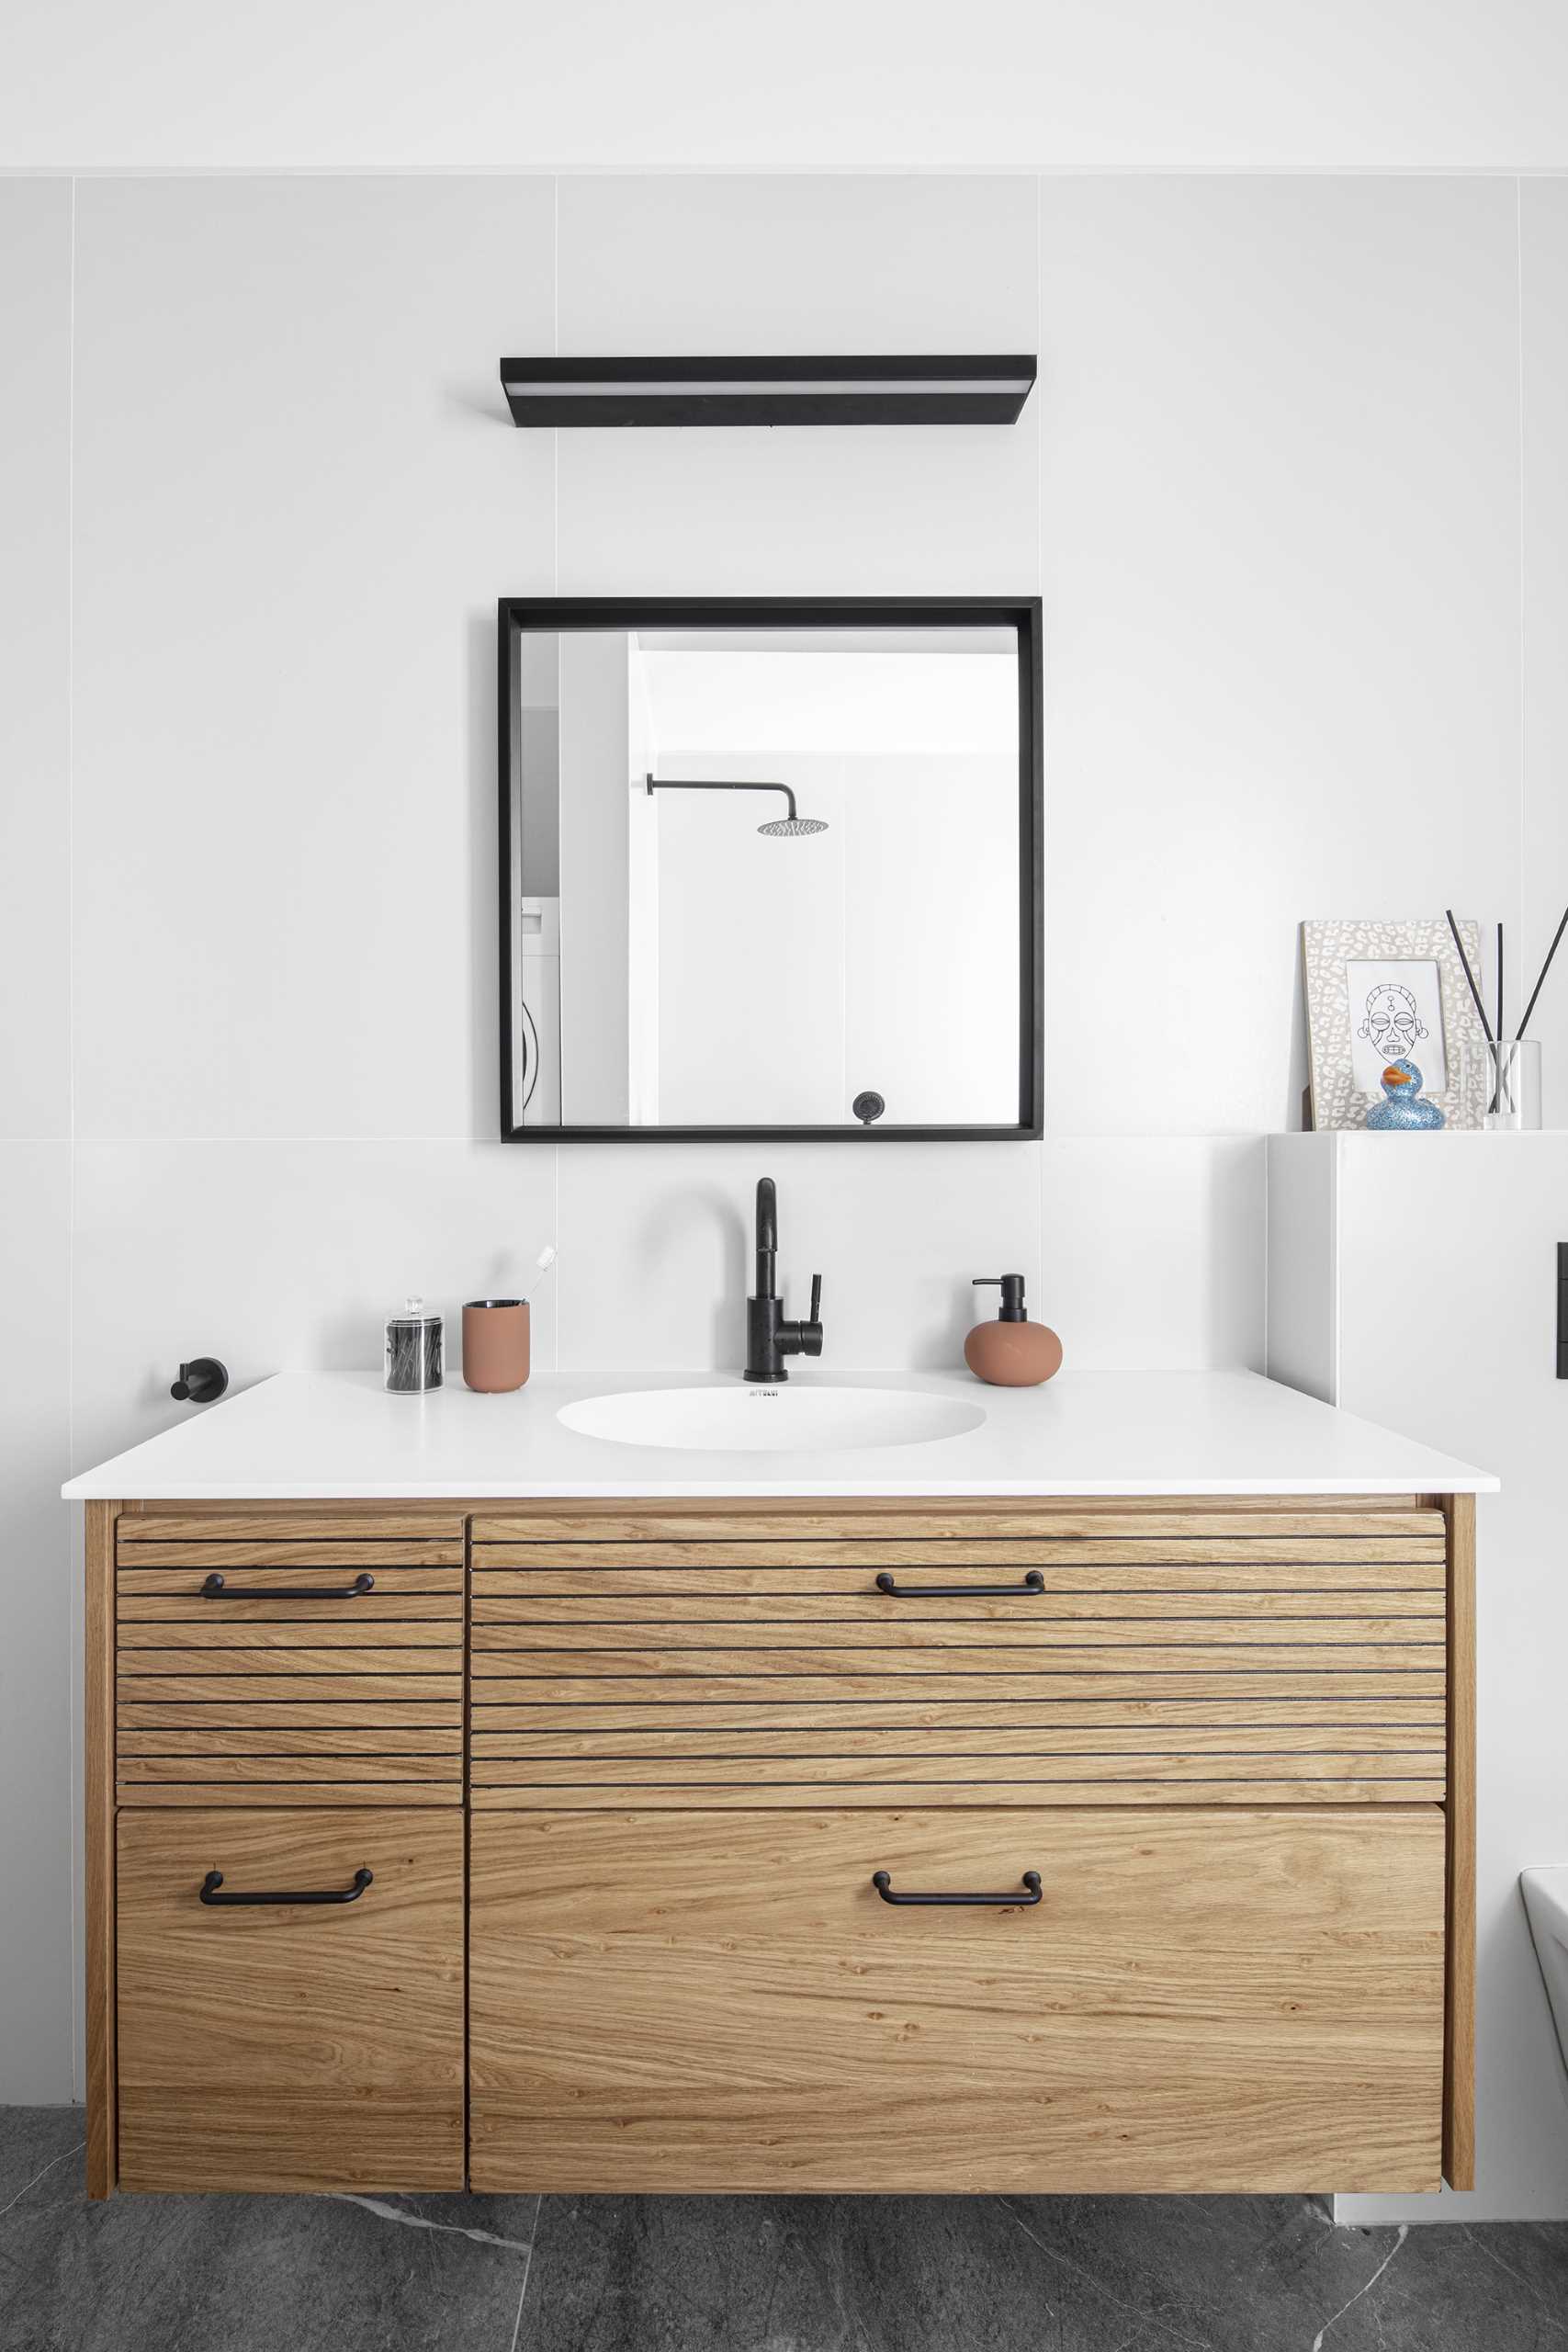 Neste banheiro moderno, há uma pia de madeira flutuante, um espelho quadrado de moldura preta, um par de ganchos de parede, azulejos de grande formato e um combo banheira/chuveiro.  Escondidas da vista estão as máquinas de lavar.